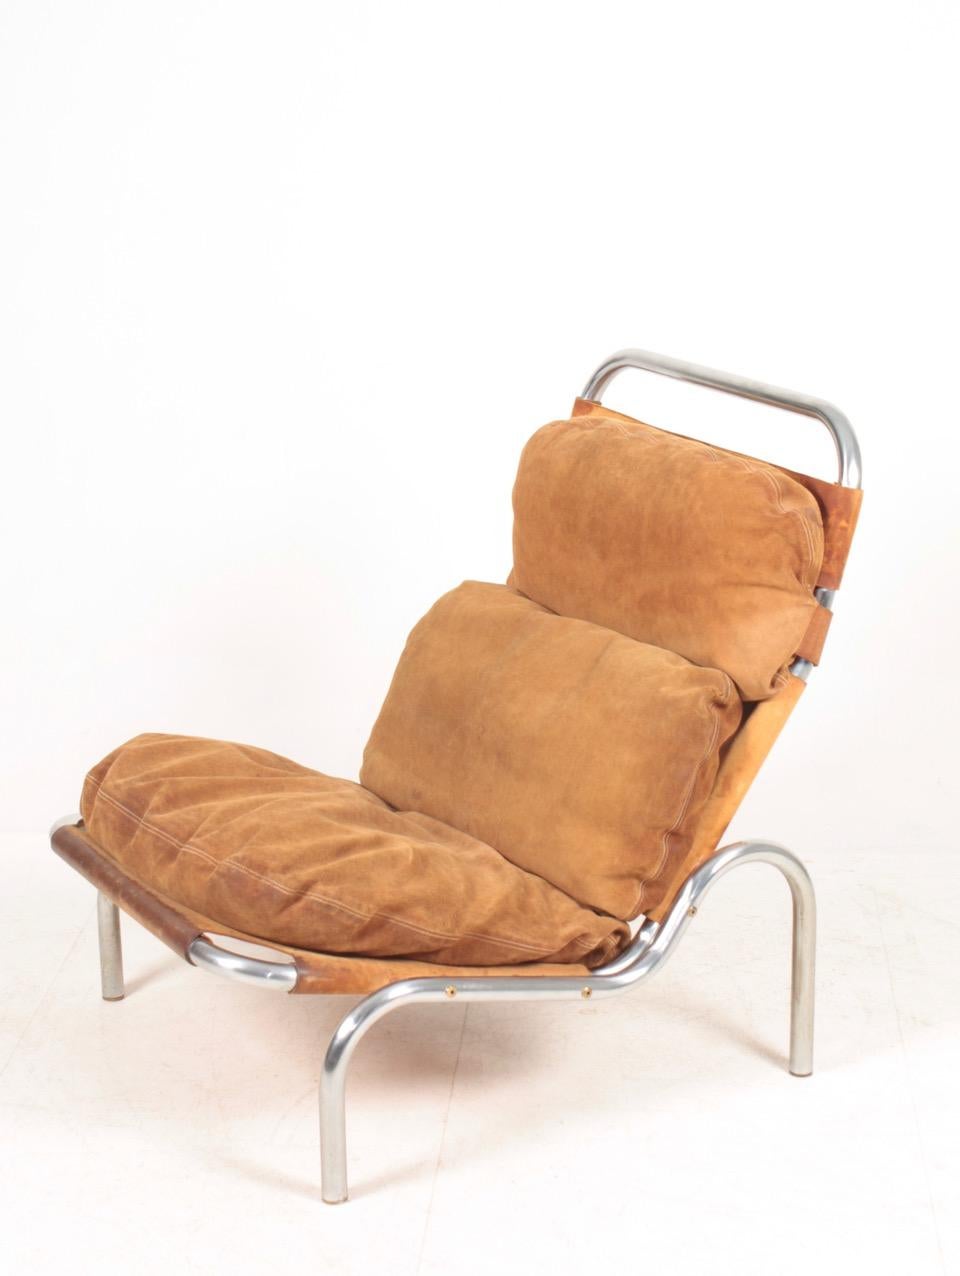 Lounge chair in suede and steel, designed by Erik Ole Jørgensen for Georg Jørgensen & Søn. Original condition.